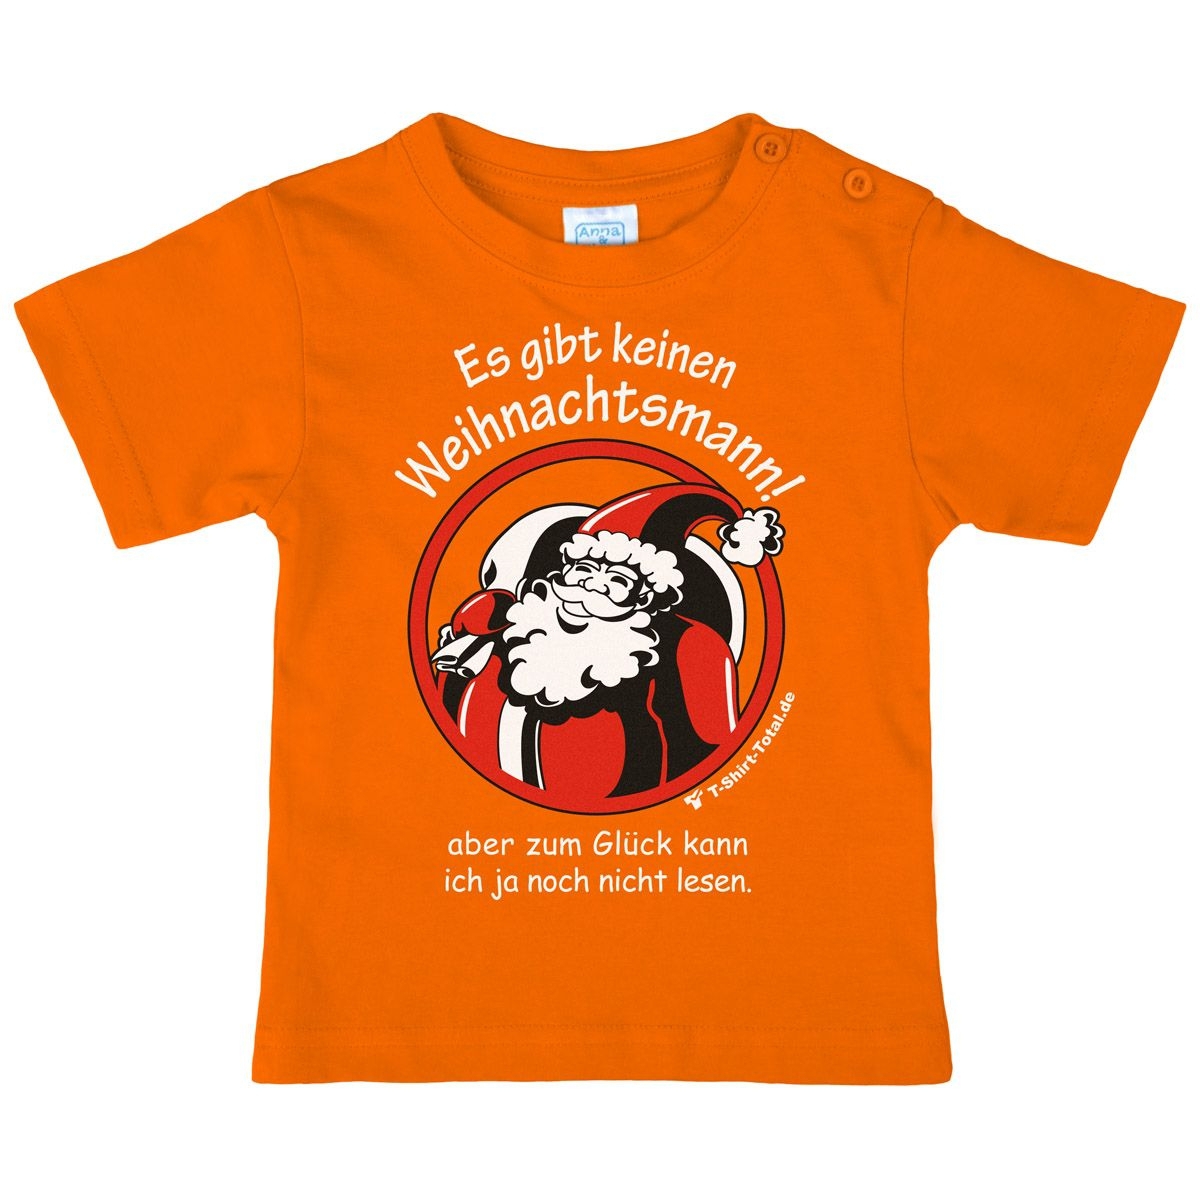 Gibt keinen Weihnachtsmann Kinder T-Shirt orange 80 / 86